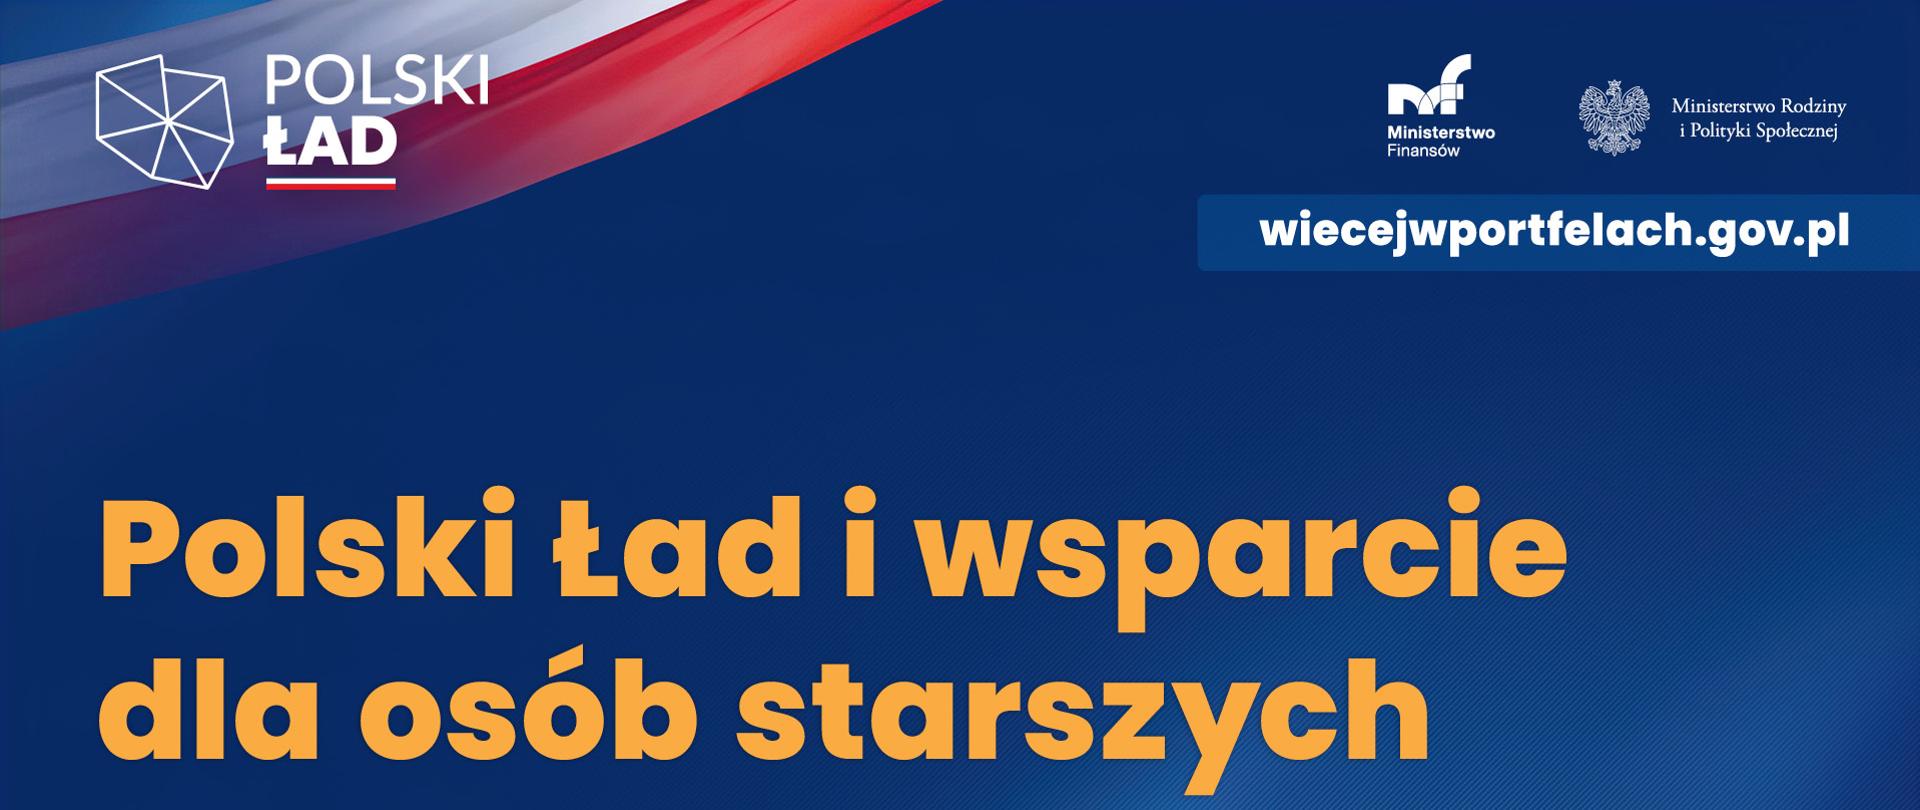 Baner. Na niebieskim tle żółty napis - Polski Ład i wsparcie dla osób starszych. W górnym lewym rogu logo Programu .